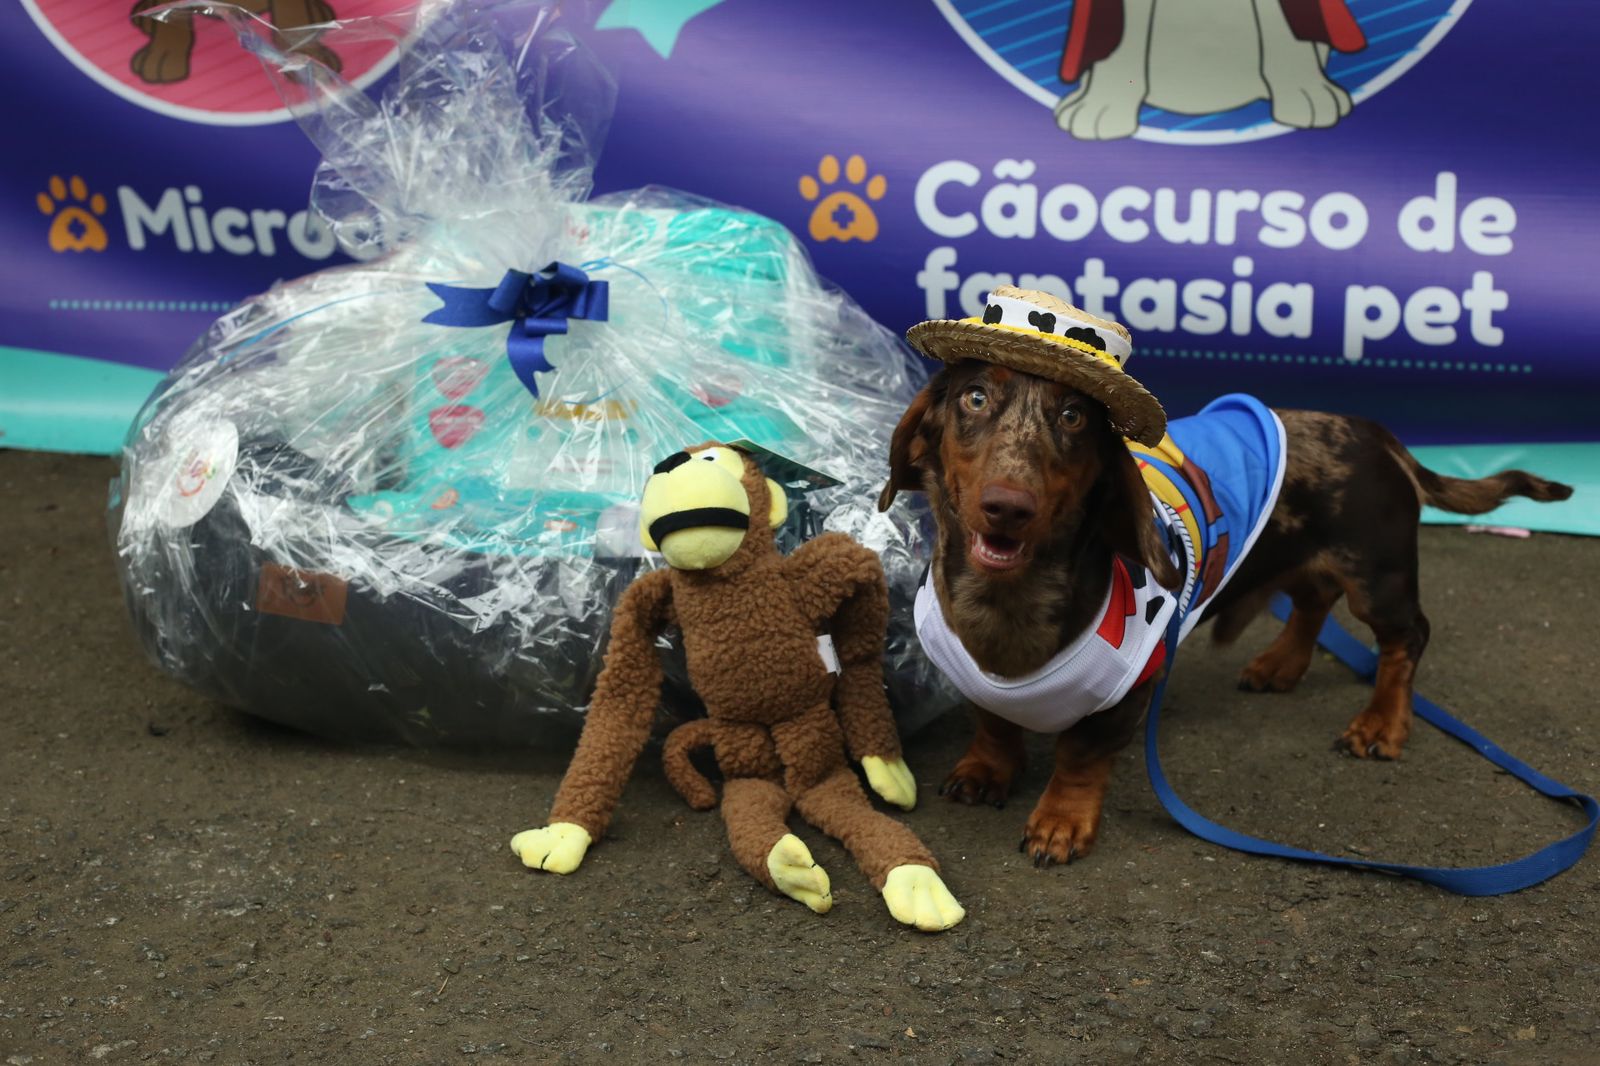 A foto mostra um cão da raça dachshund com pelagem marrom, vestido com uma fantasia do cowboy Woody, da animação Toy Story